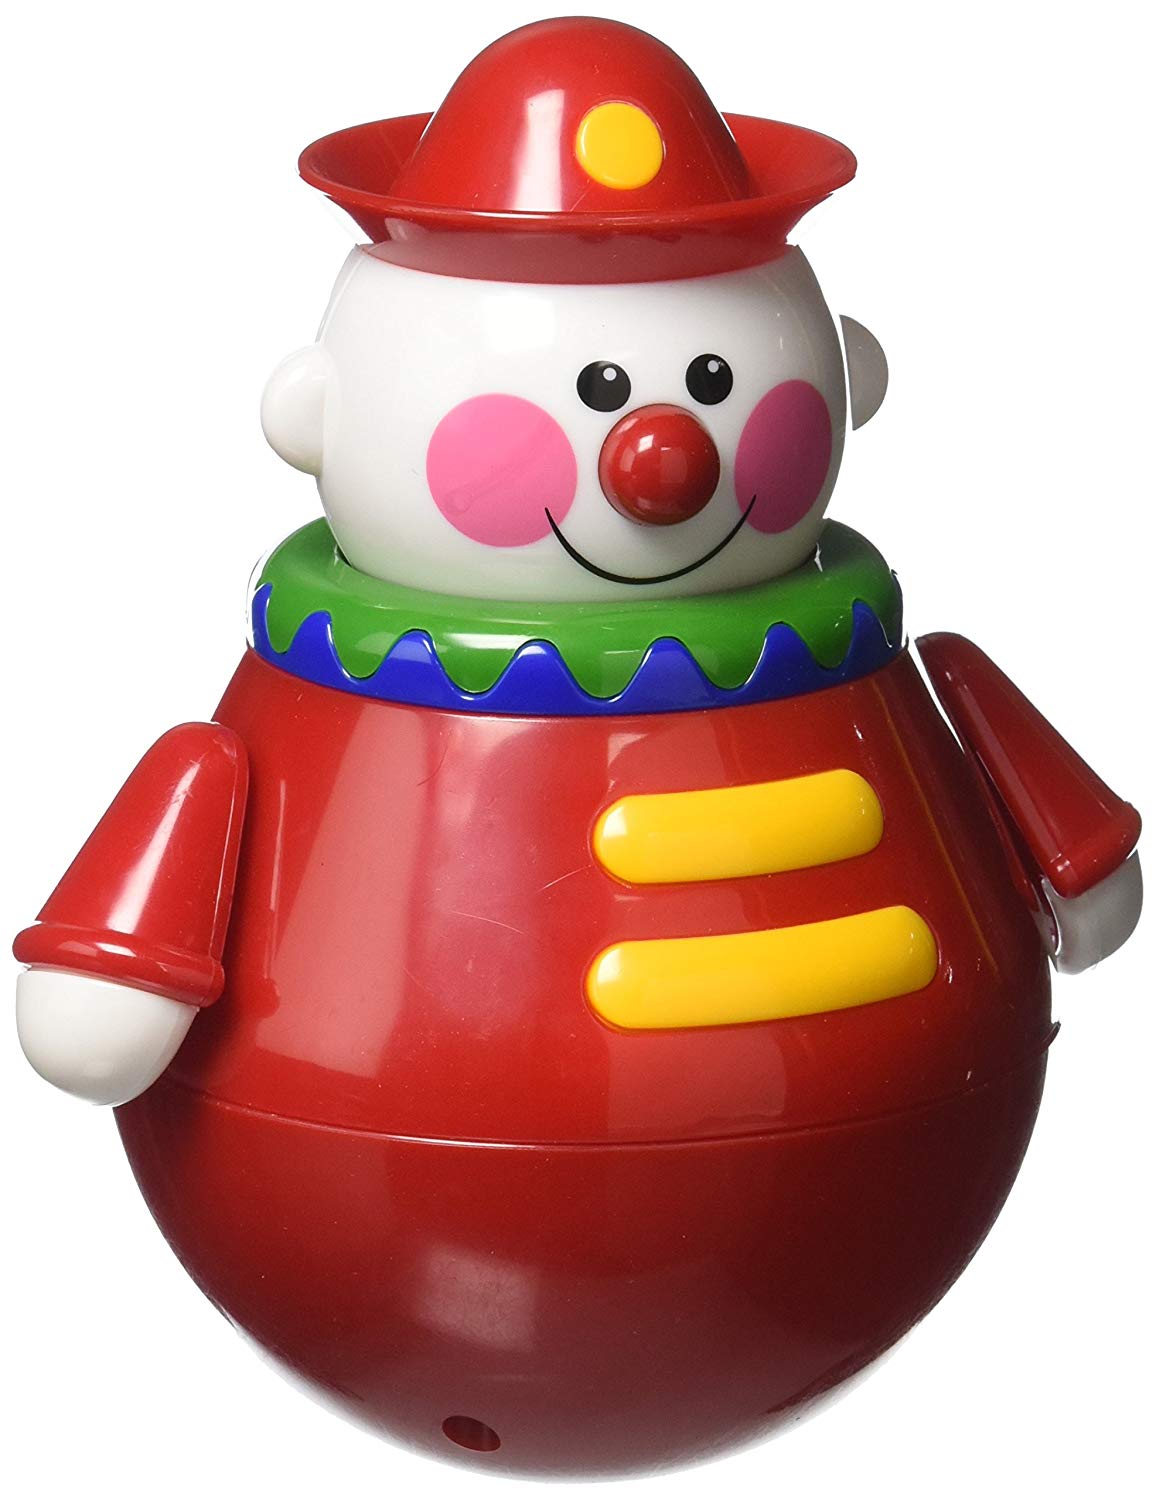 Grappige staande clown Roly Poly. Deze rinkelende clown kan eenvoudig worden gestart door te tikken. Hij zwaait van rechts naar links, heen en weer, waggelend met zijn hoofd en wiebelend met zijn armen. dit is één van de Meest Verkochte Baby- & peuterspeelgoed